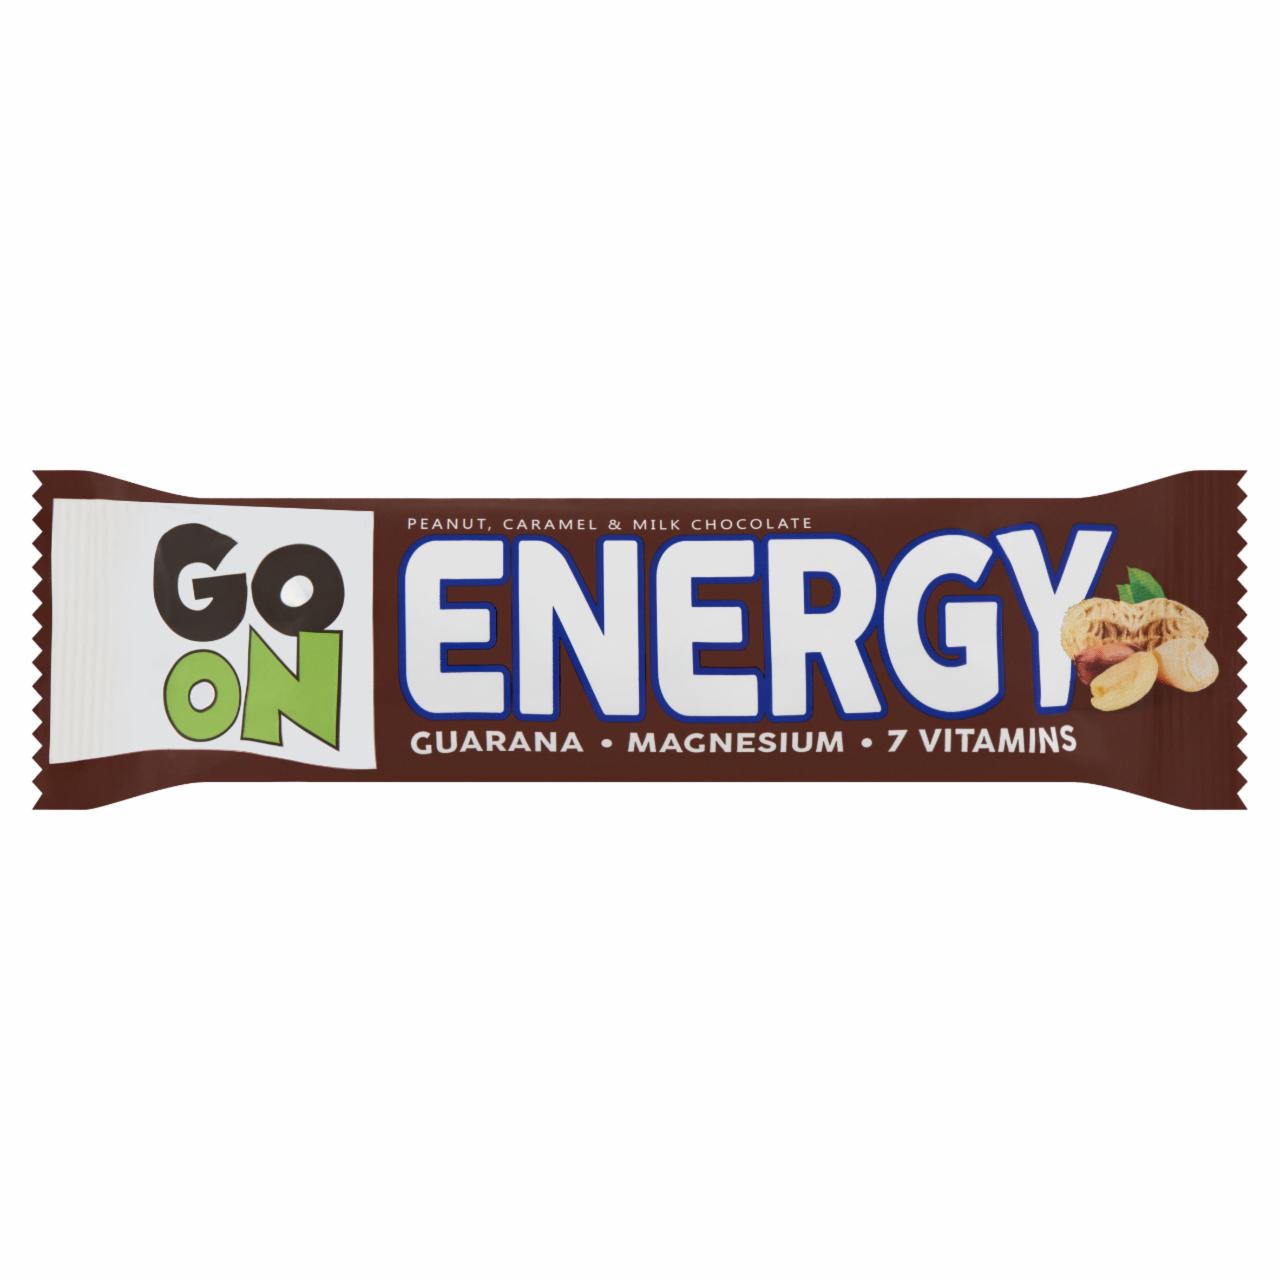 Zdjęcia - Peanut caramel & milk chocolate Energy Go On